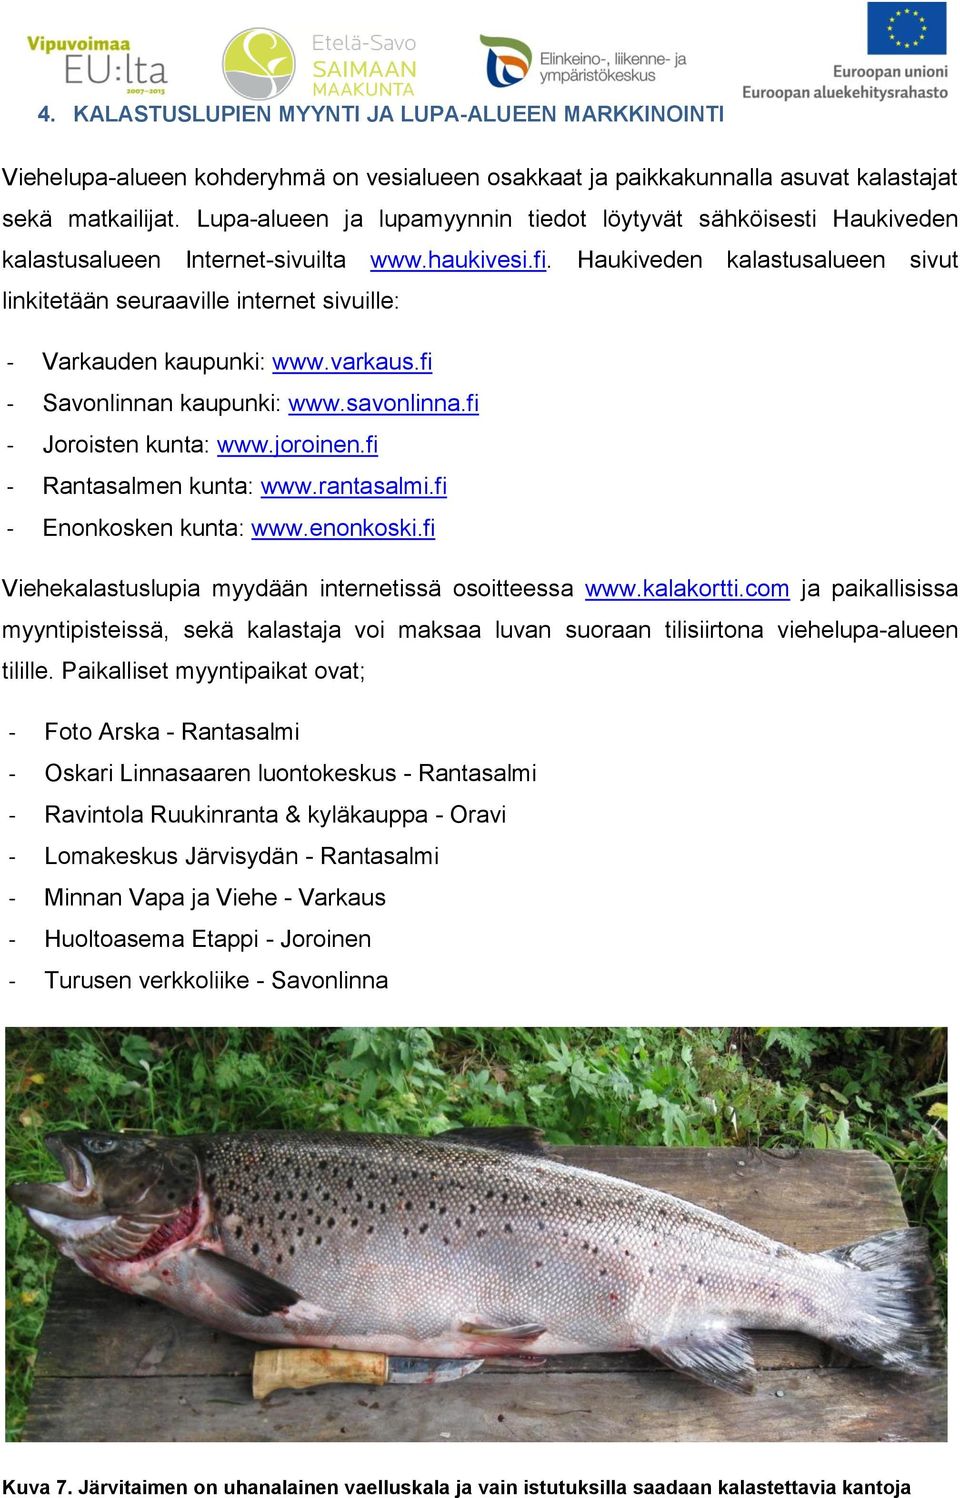 Haukiveden kalastusalueen sivut linkitetään seuraaville internet sivuille: - Varkauden kaupunki: www.varkaus.fi - Savonlinnan kaupunki: www.savonlinna.fi - Joroisten kunta: www.joroinen.